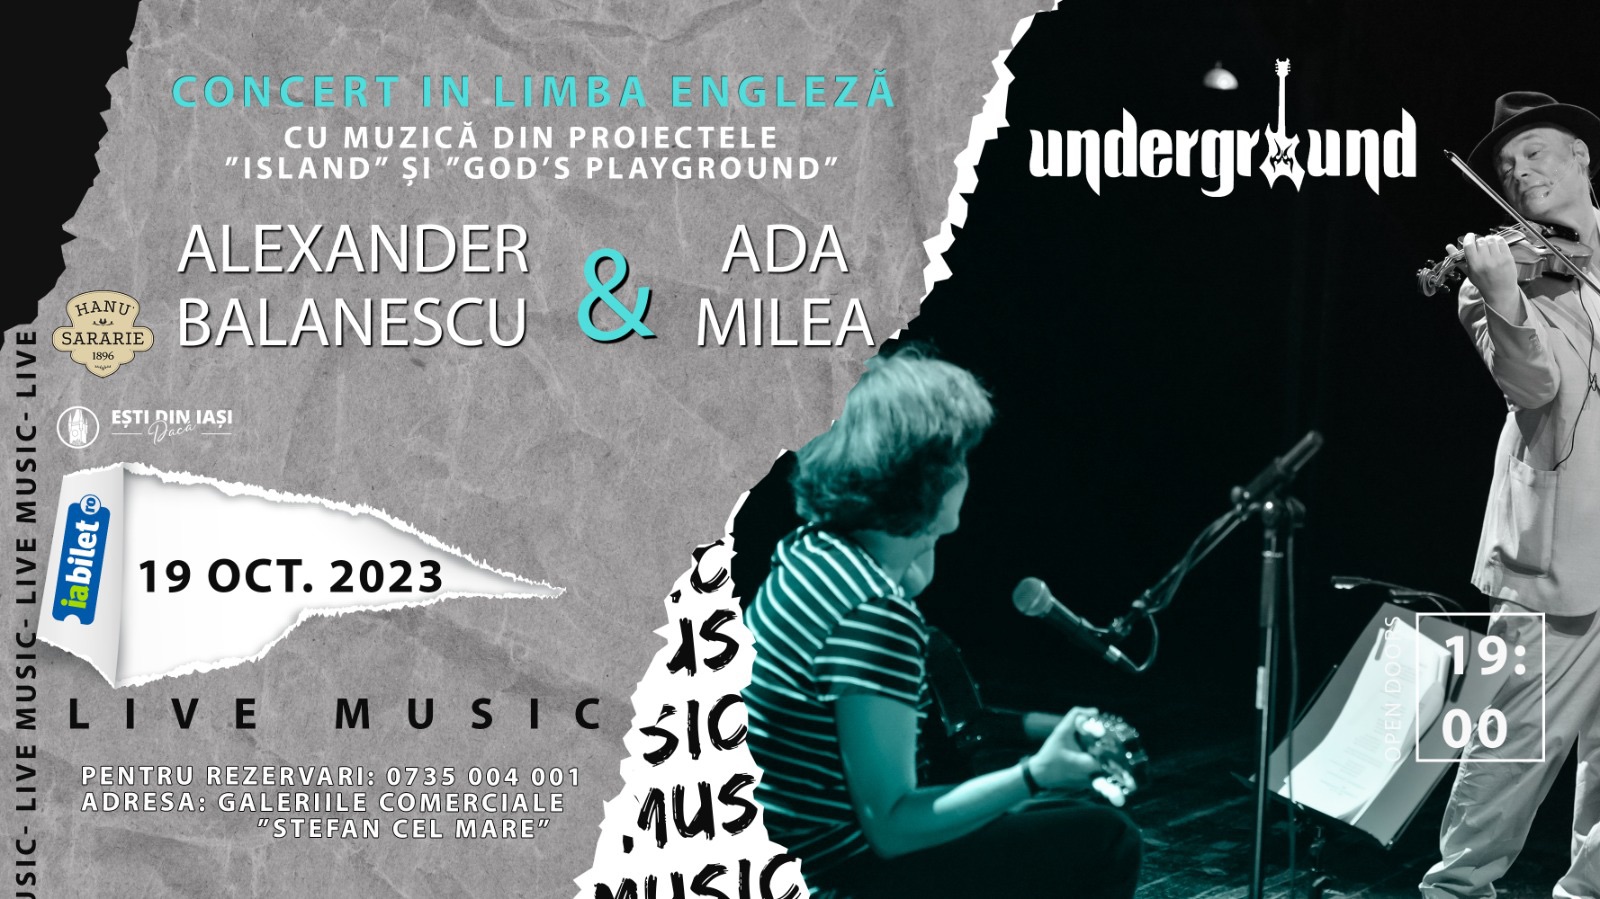 Concert Alexander Bălănescu & Ada Milea în Underground Pub din Iași